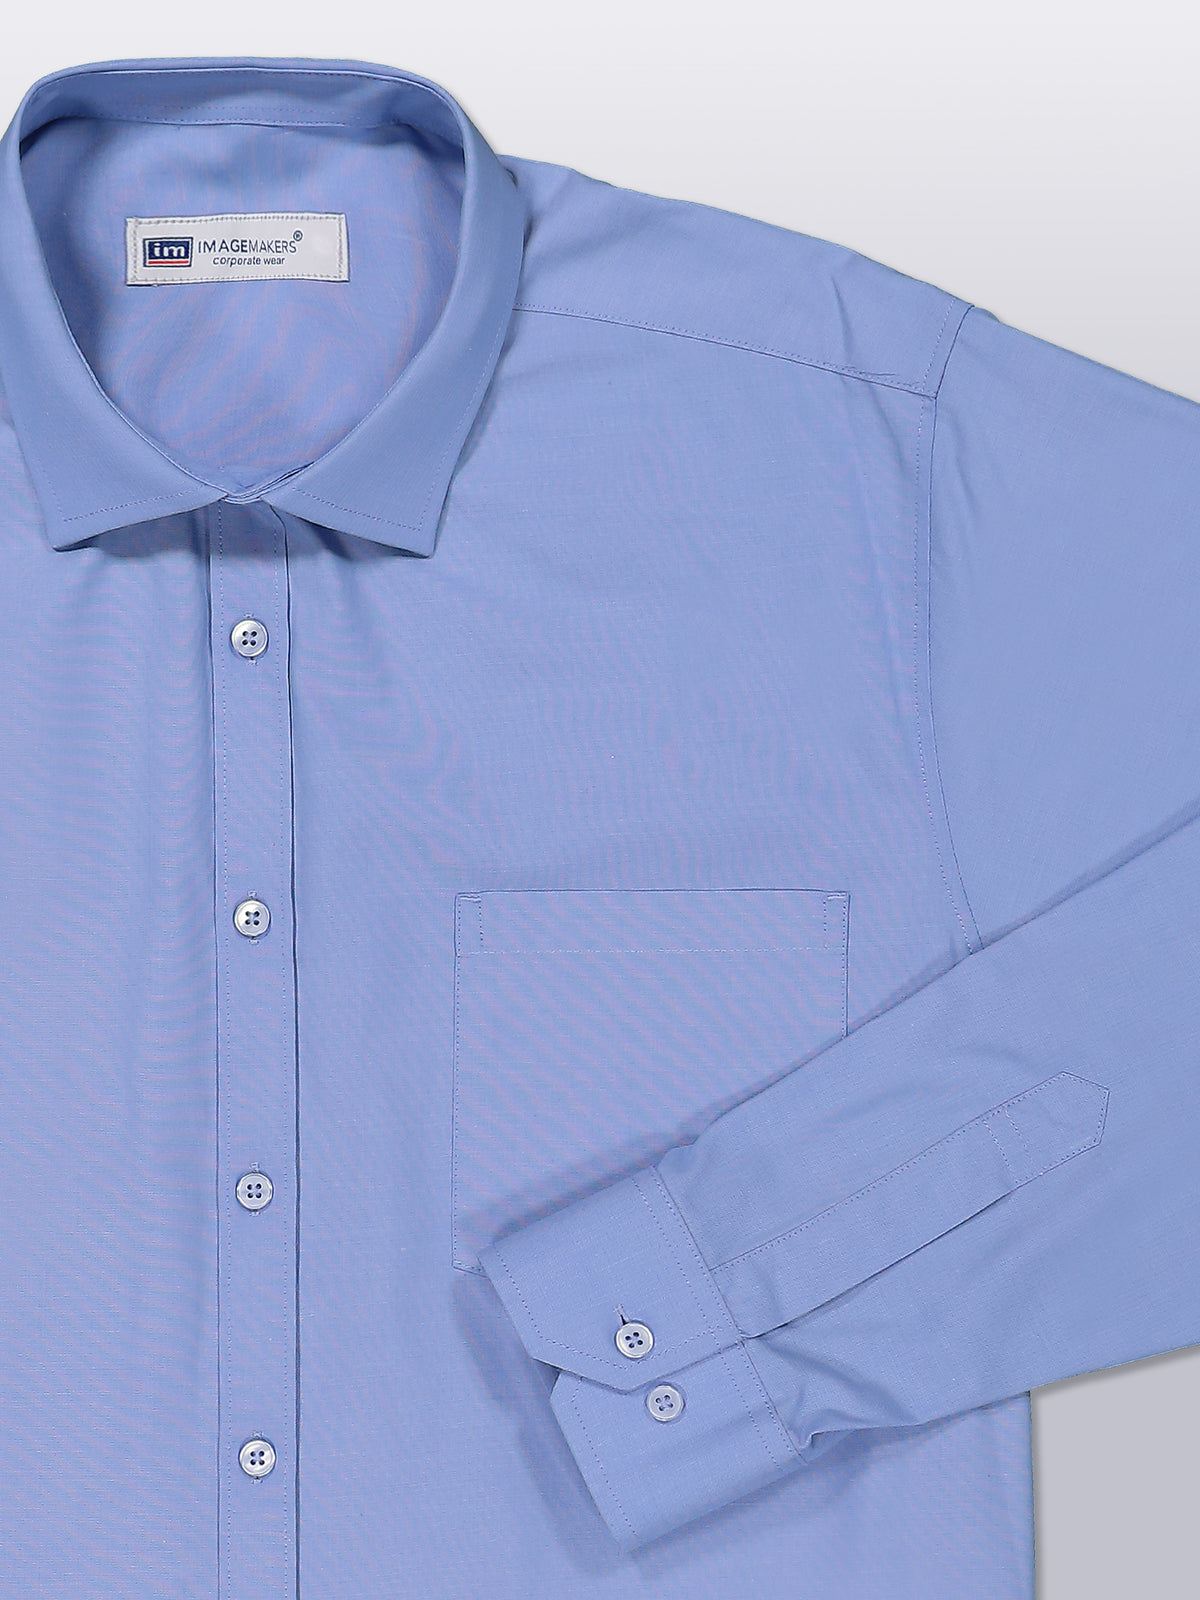 Stuart cotton shirt- light blue